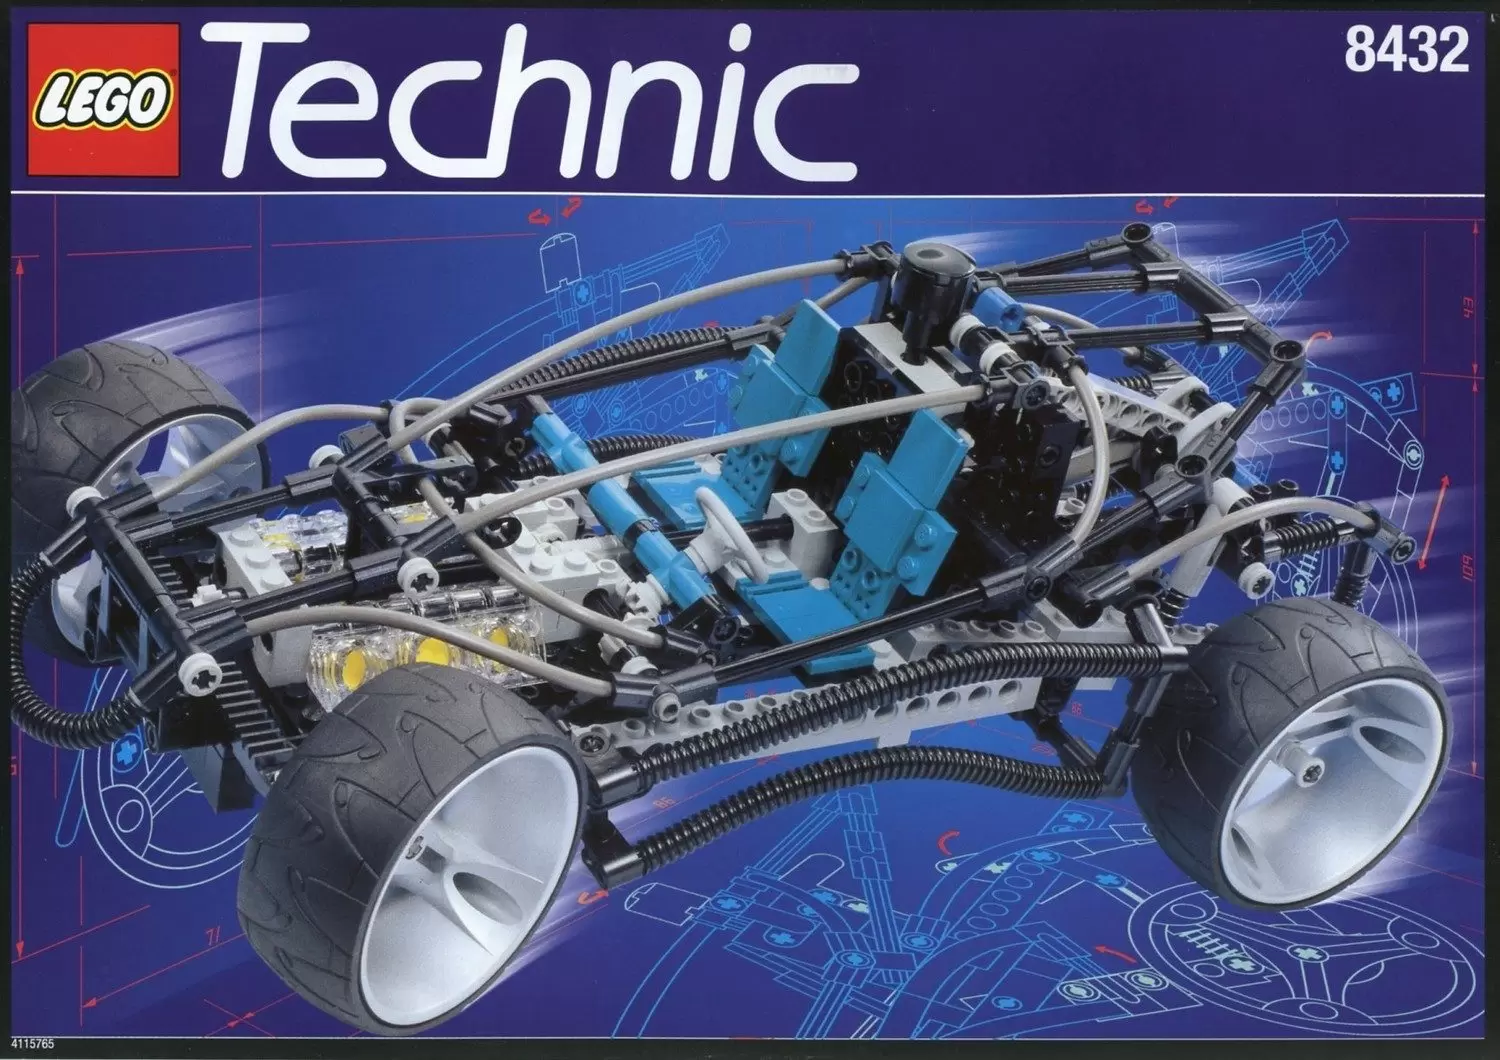 LEGO Technic - Concept Car